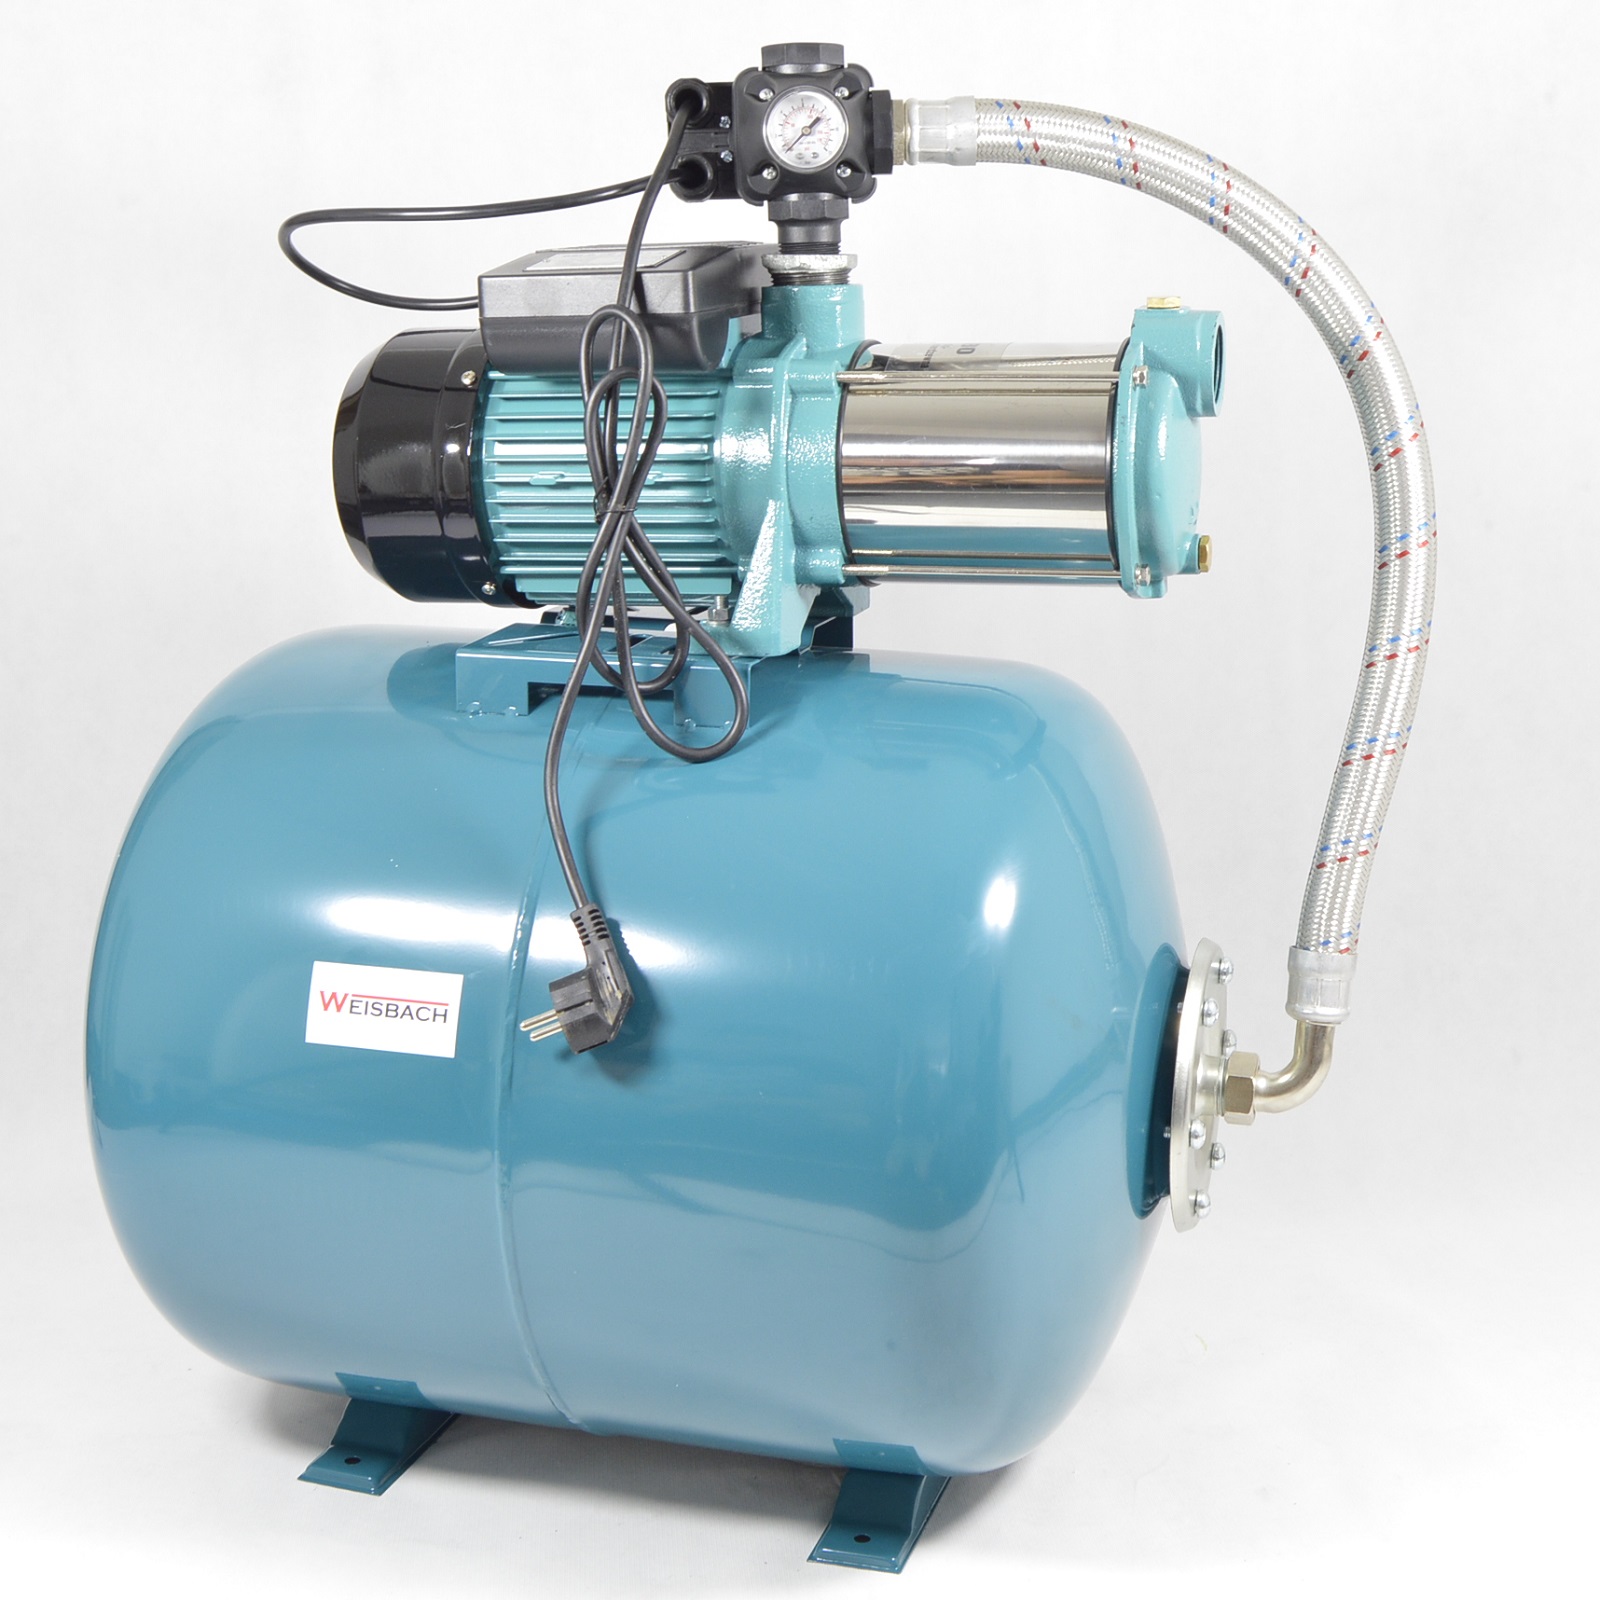 Weisbach Hauswasserwerk Hauswasserautomat 100 L Pumpe MHI2200 - 5